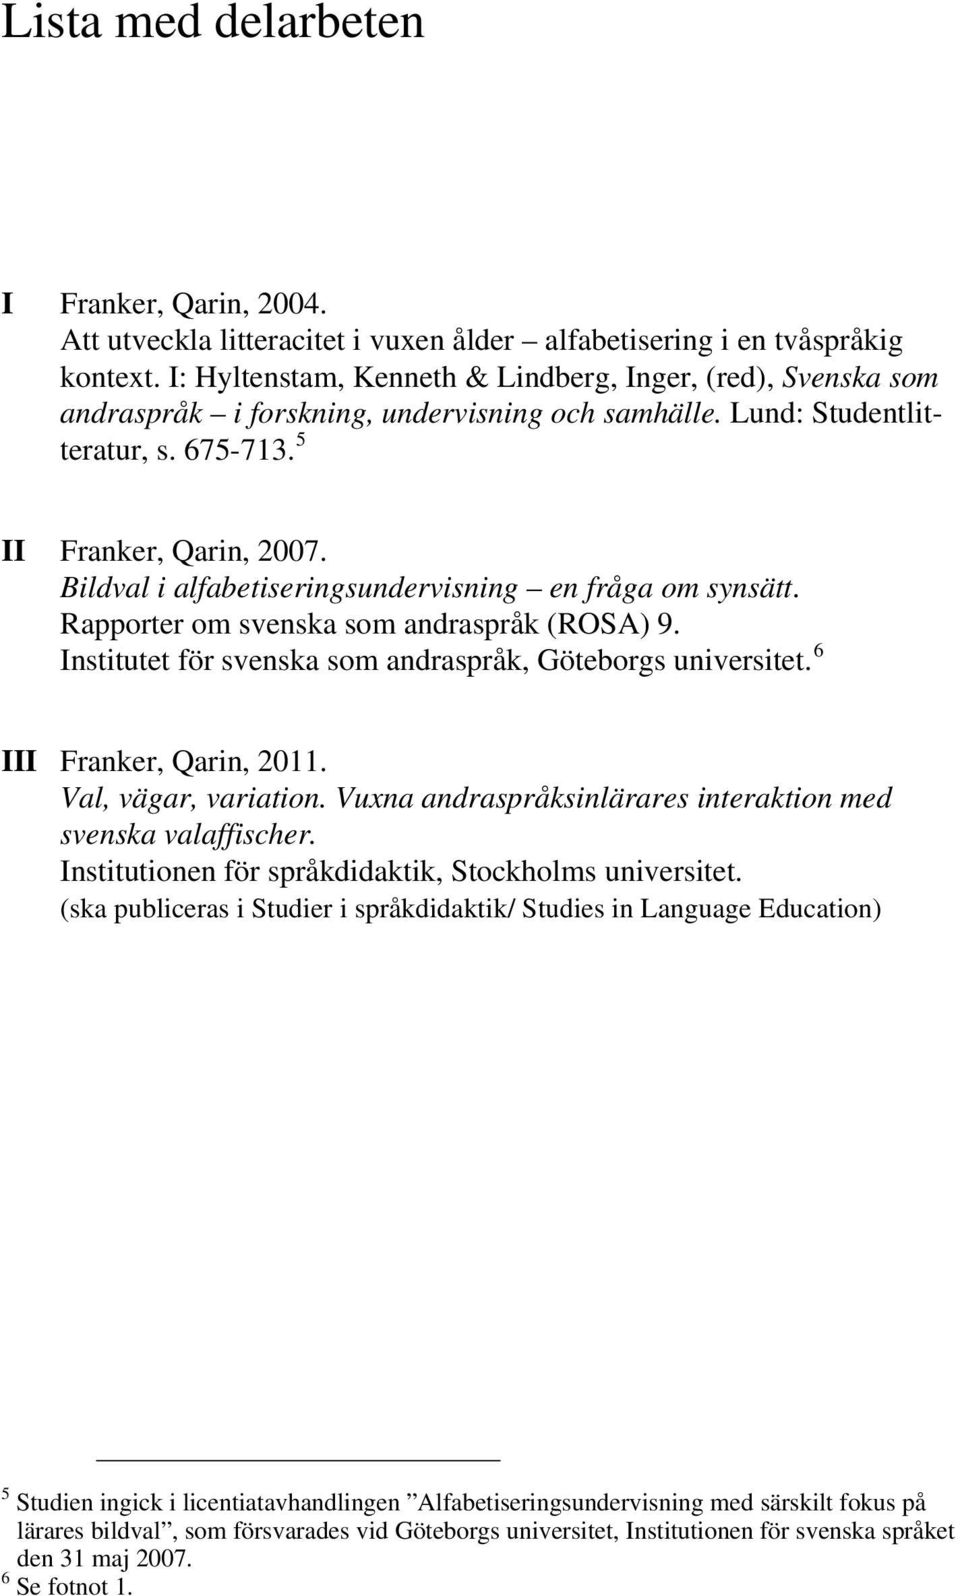 Bildval i alfabetiseringsundervisning en fråga om synsätt. Rapporter om svenska som andraspråk (ROSA) 9. Institutet för svenska som andraspråk, Göteborgs universitet. 6 III Franker, Qarin, 2011.